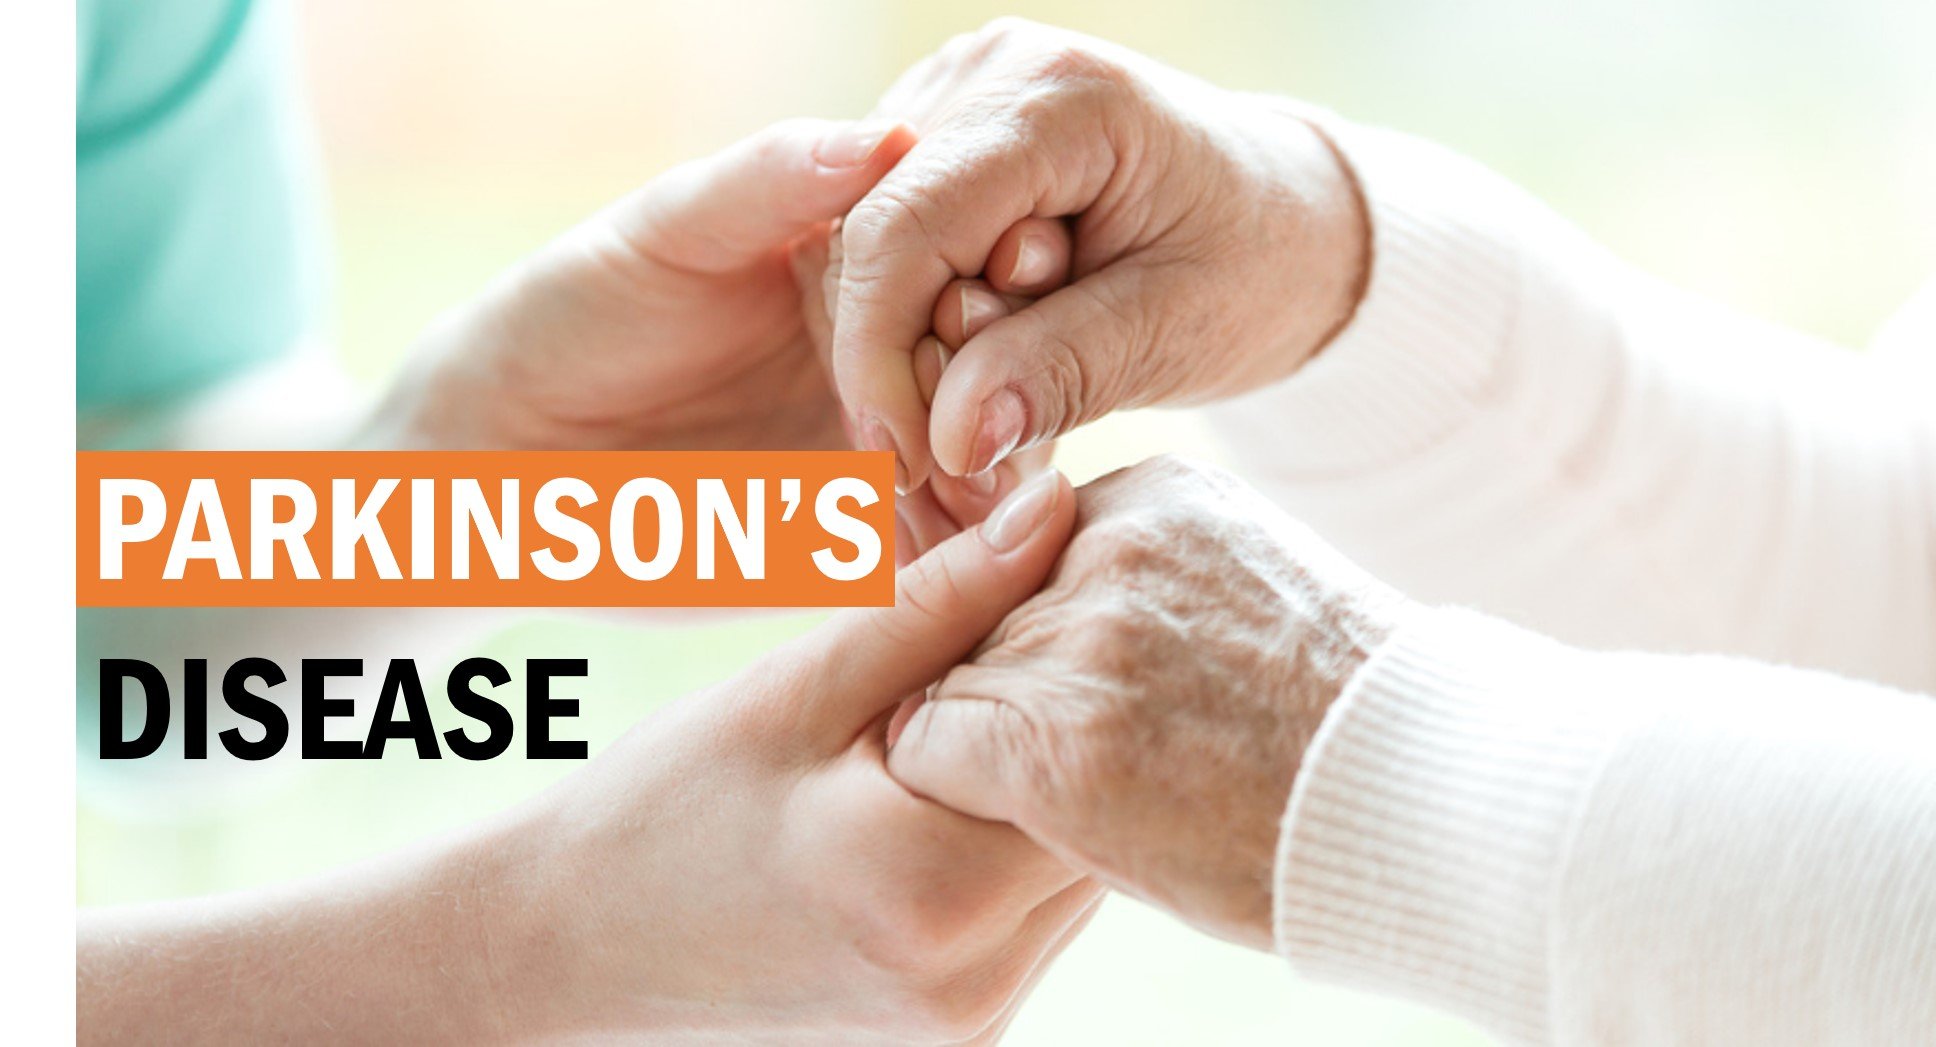 Parkinsonâs Symptoms, Diagnosis &  Treatments